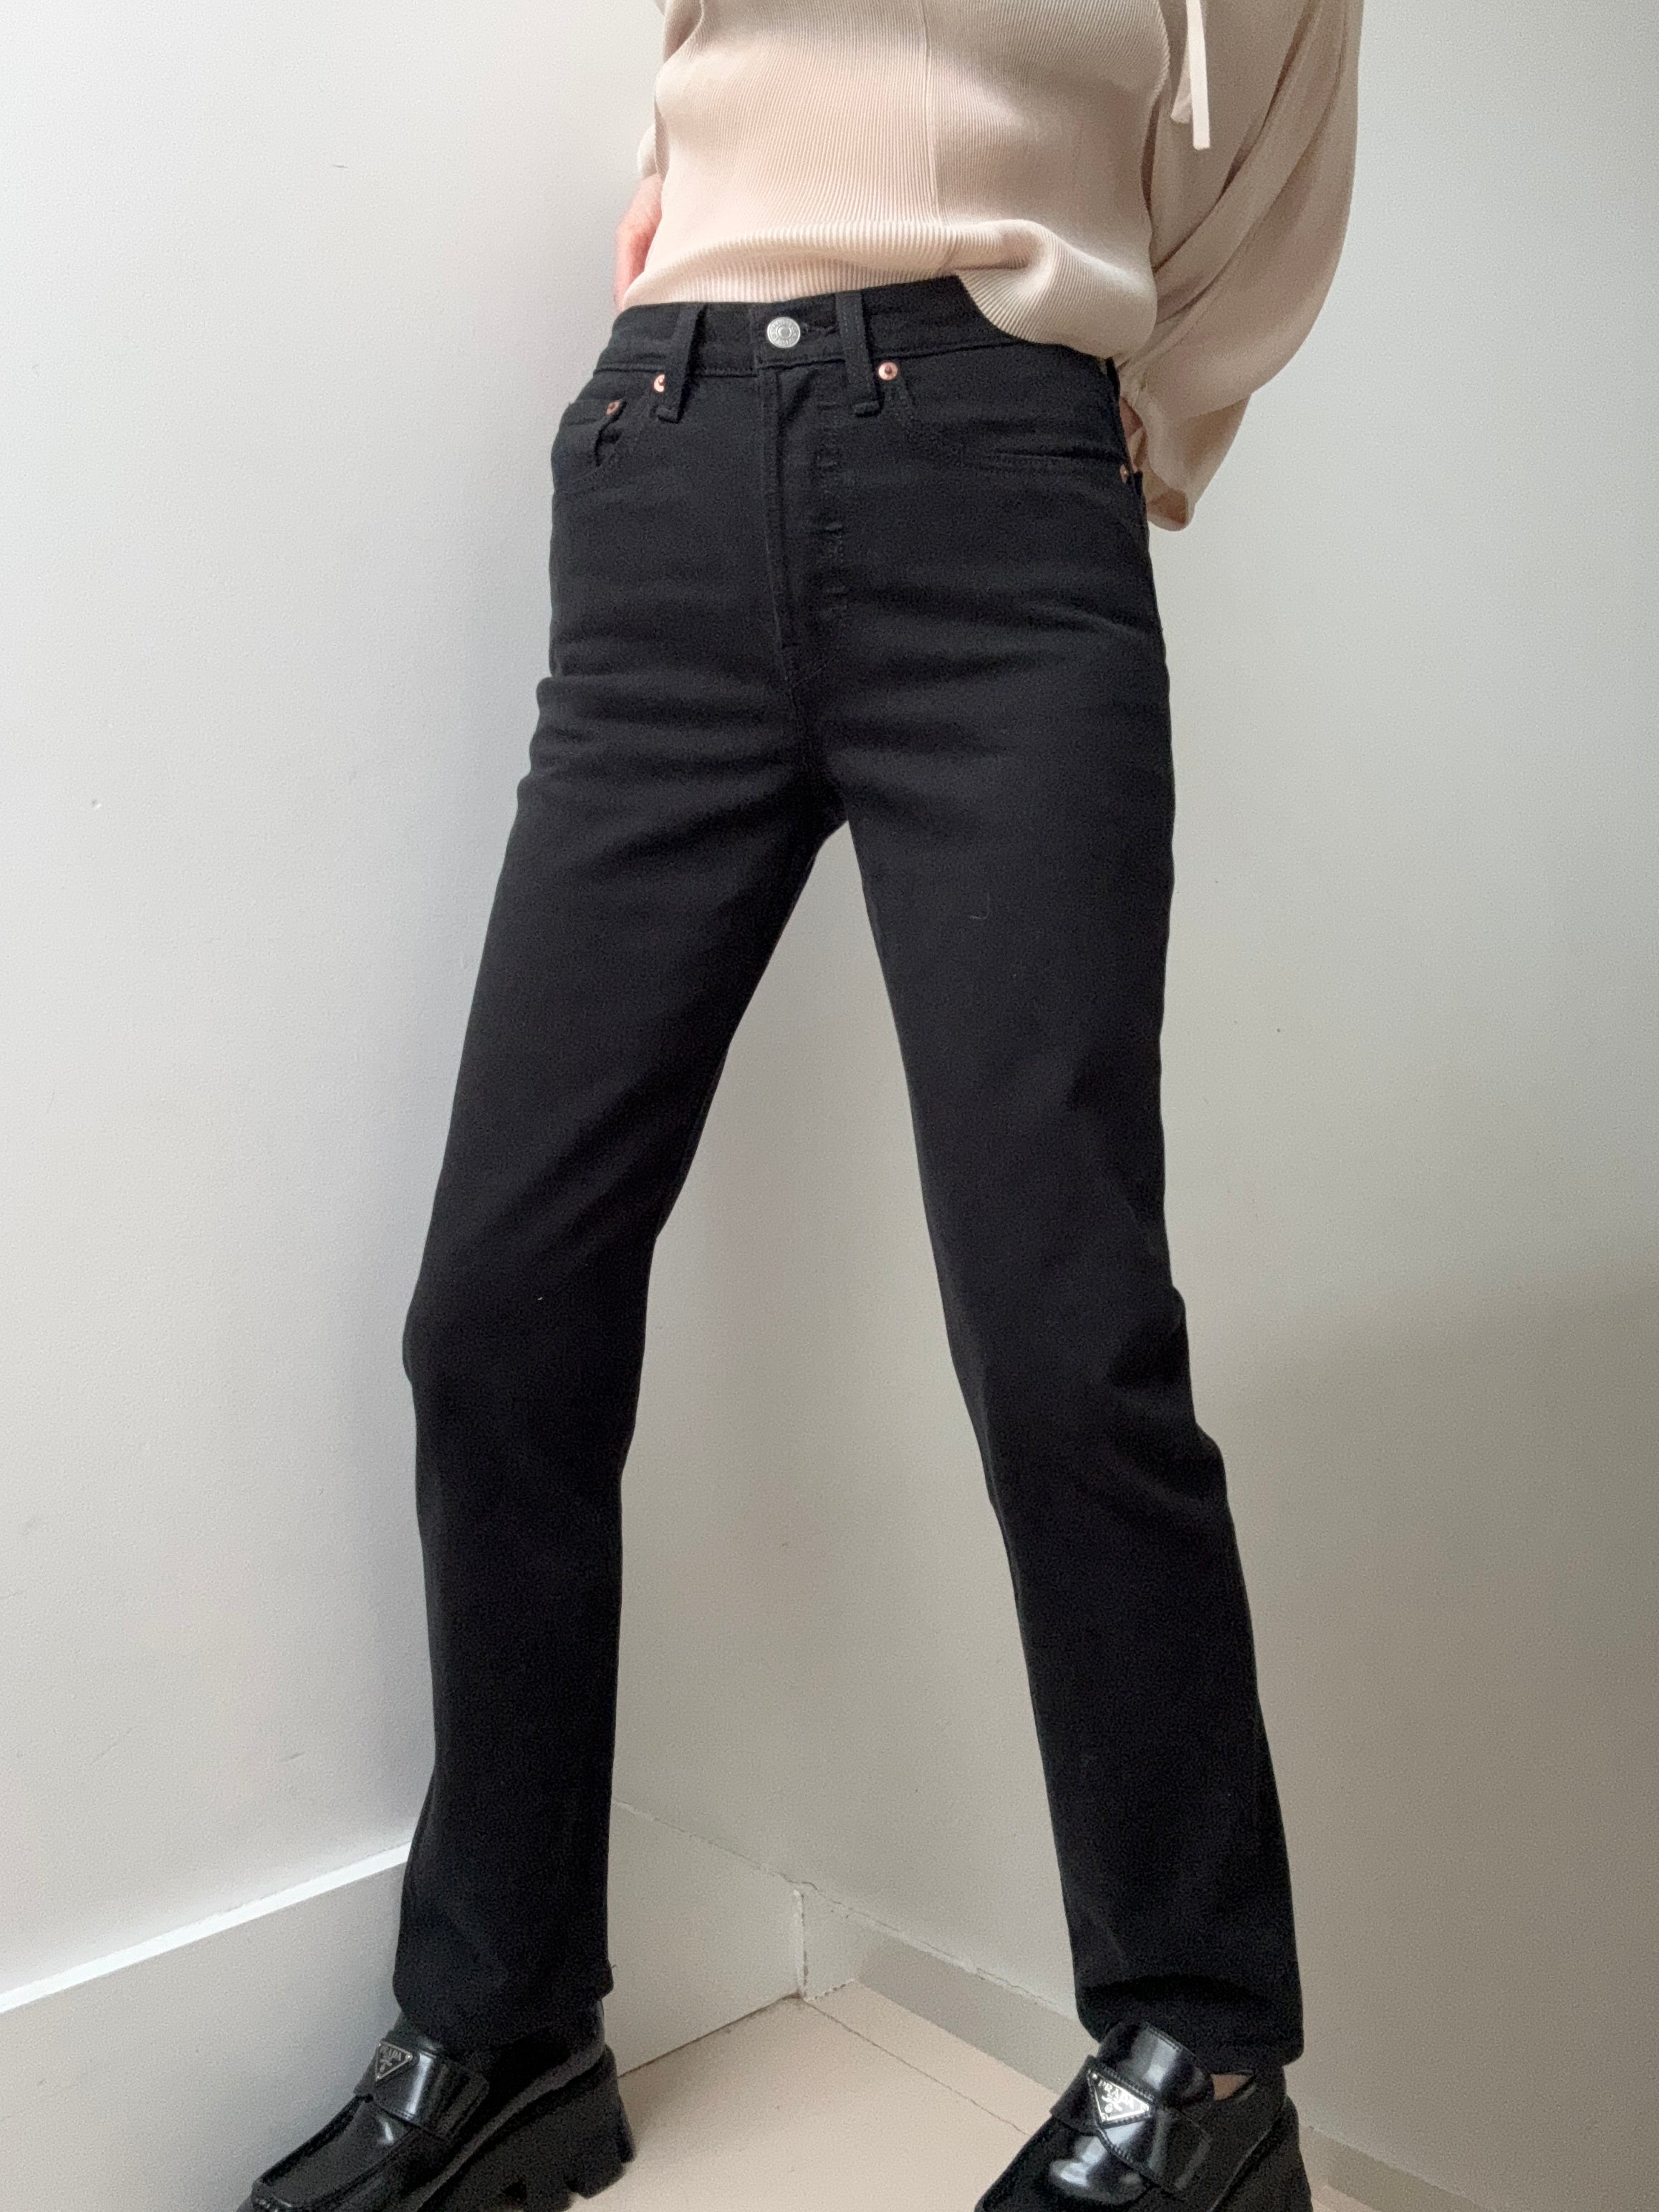 Levis Jeans Levi's 501 Black Jeans